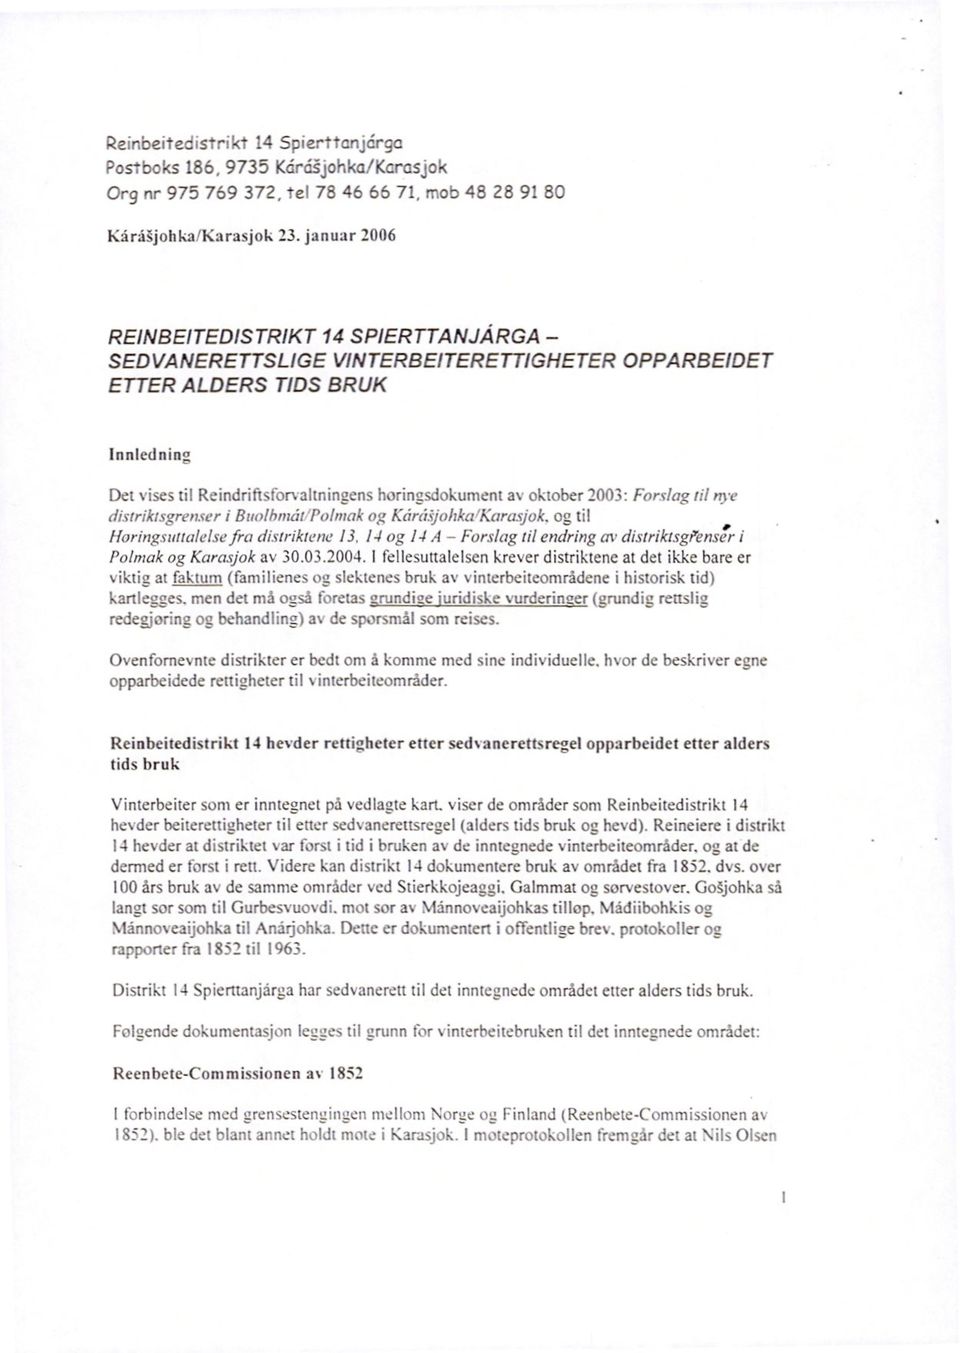 2003: Forslag til rwe distrilasgrenser i BuolInniaPolmak og KanWohka/Karasjok. og til Ploringsunalelse fra distriktene 13. 14 og 14 A Forslag til endring av distriktseensir i Polmak og Karasjok av 30.